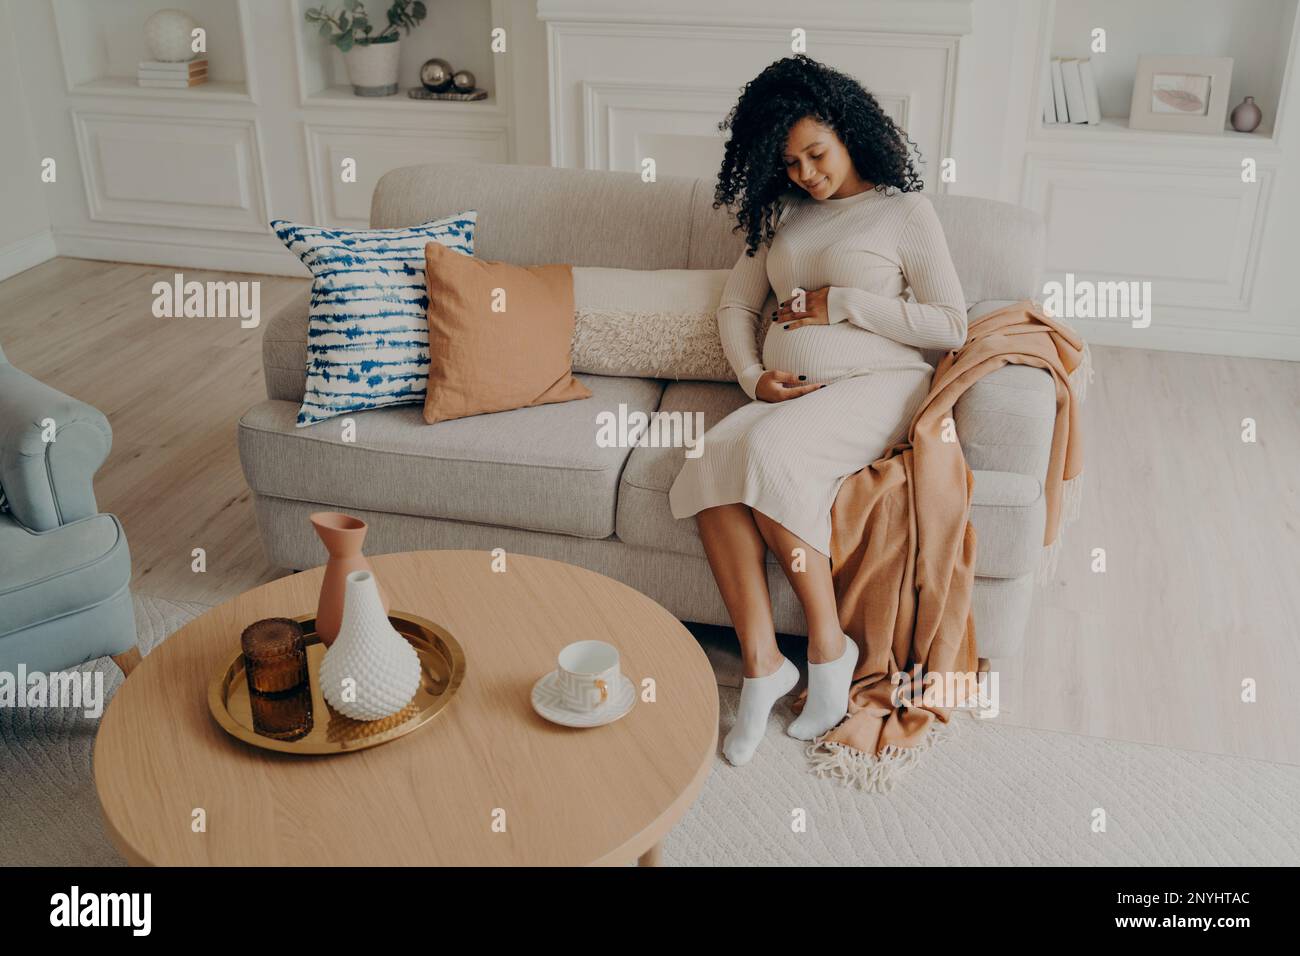 Hermosa foto de mujer afro americana embarazada sentada en un sofá acogedor decorado con almohadas de colores colocando suavemente las manos en su estómago mientras se relaja Foto de stock